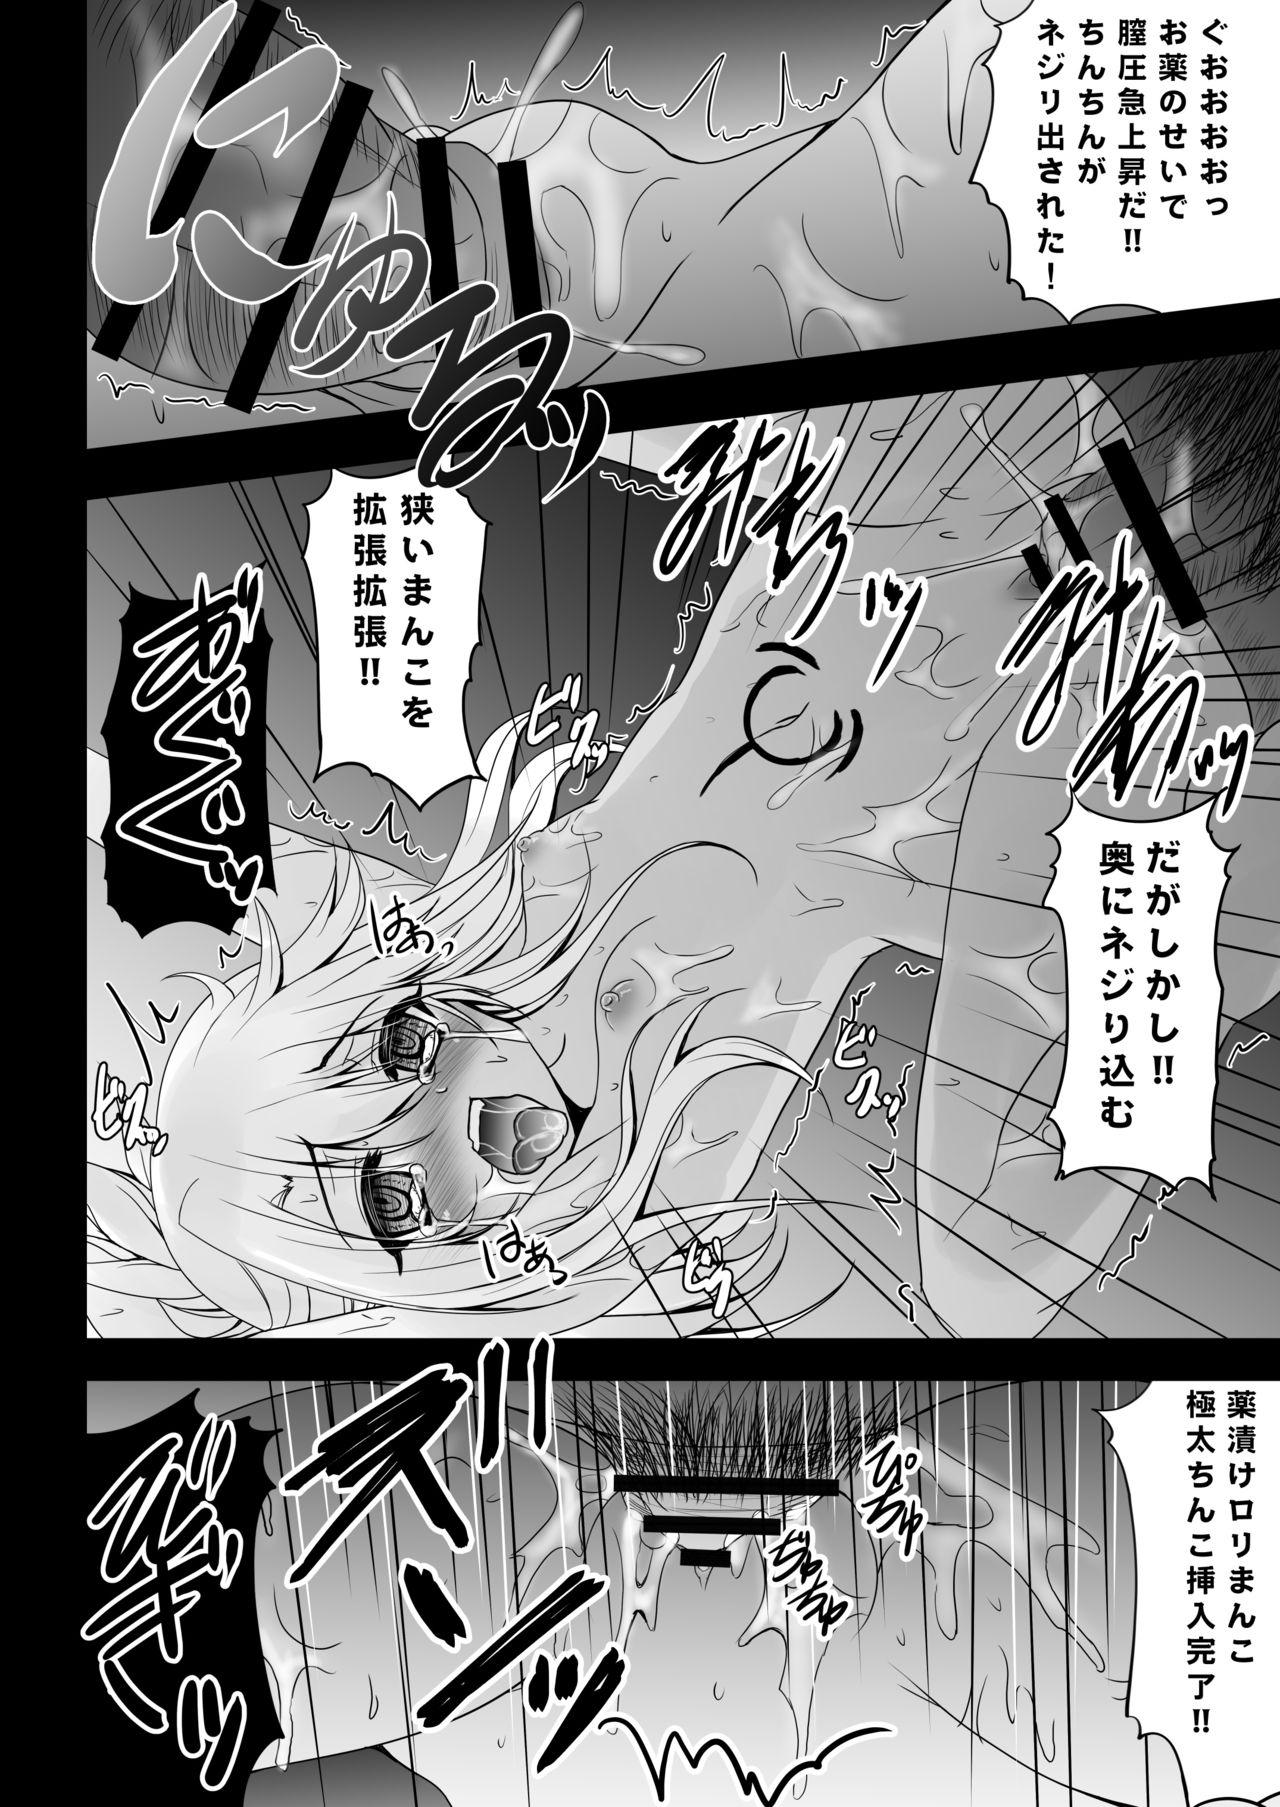 Footworship Kusurizuke Kuro no Susume - Fate kaleid liner prisma illya Gorda - Page 11